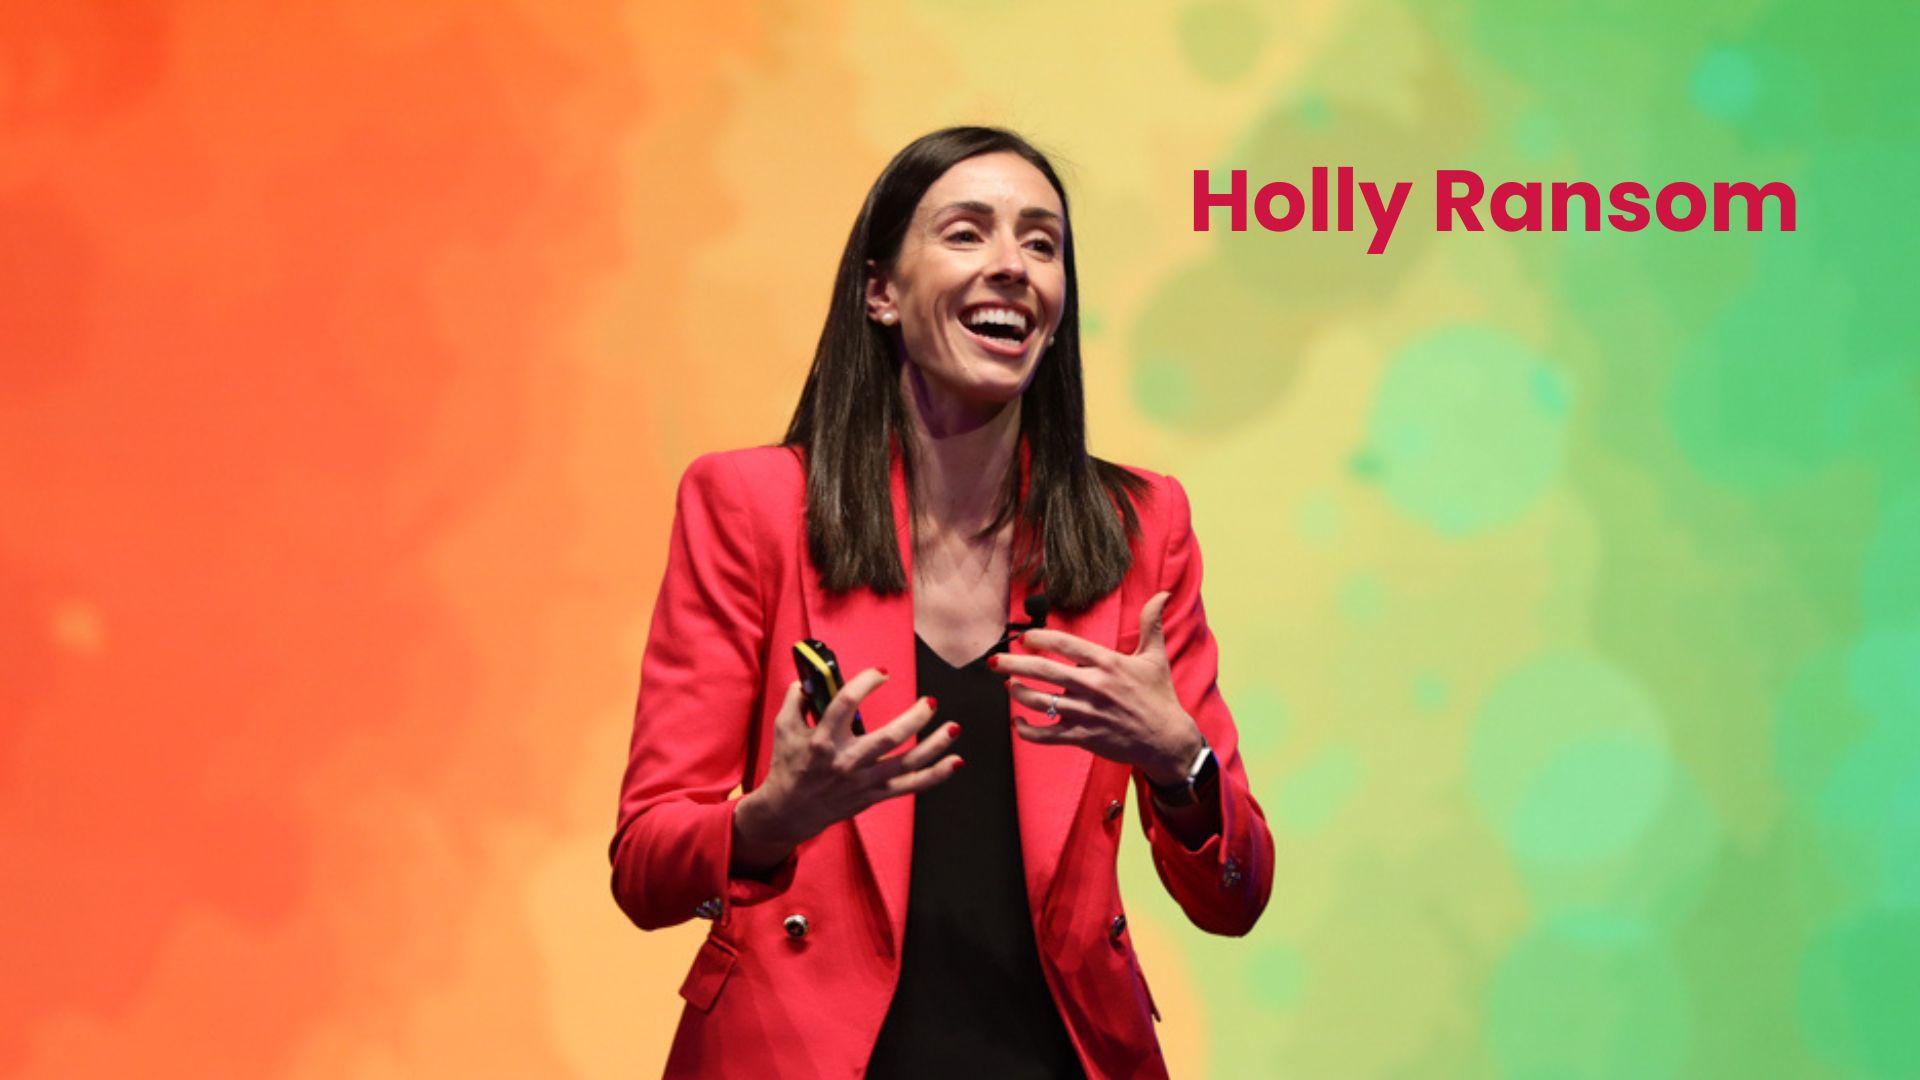 Holly Ransom - Global Leadership Speaker, speaker showreel